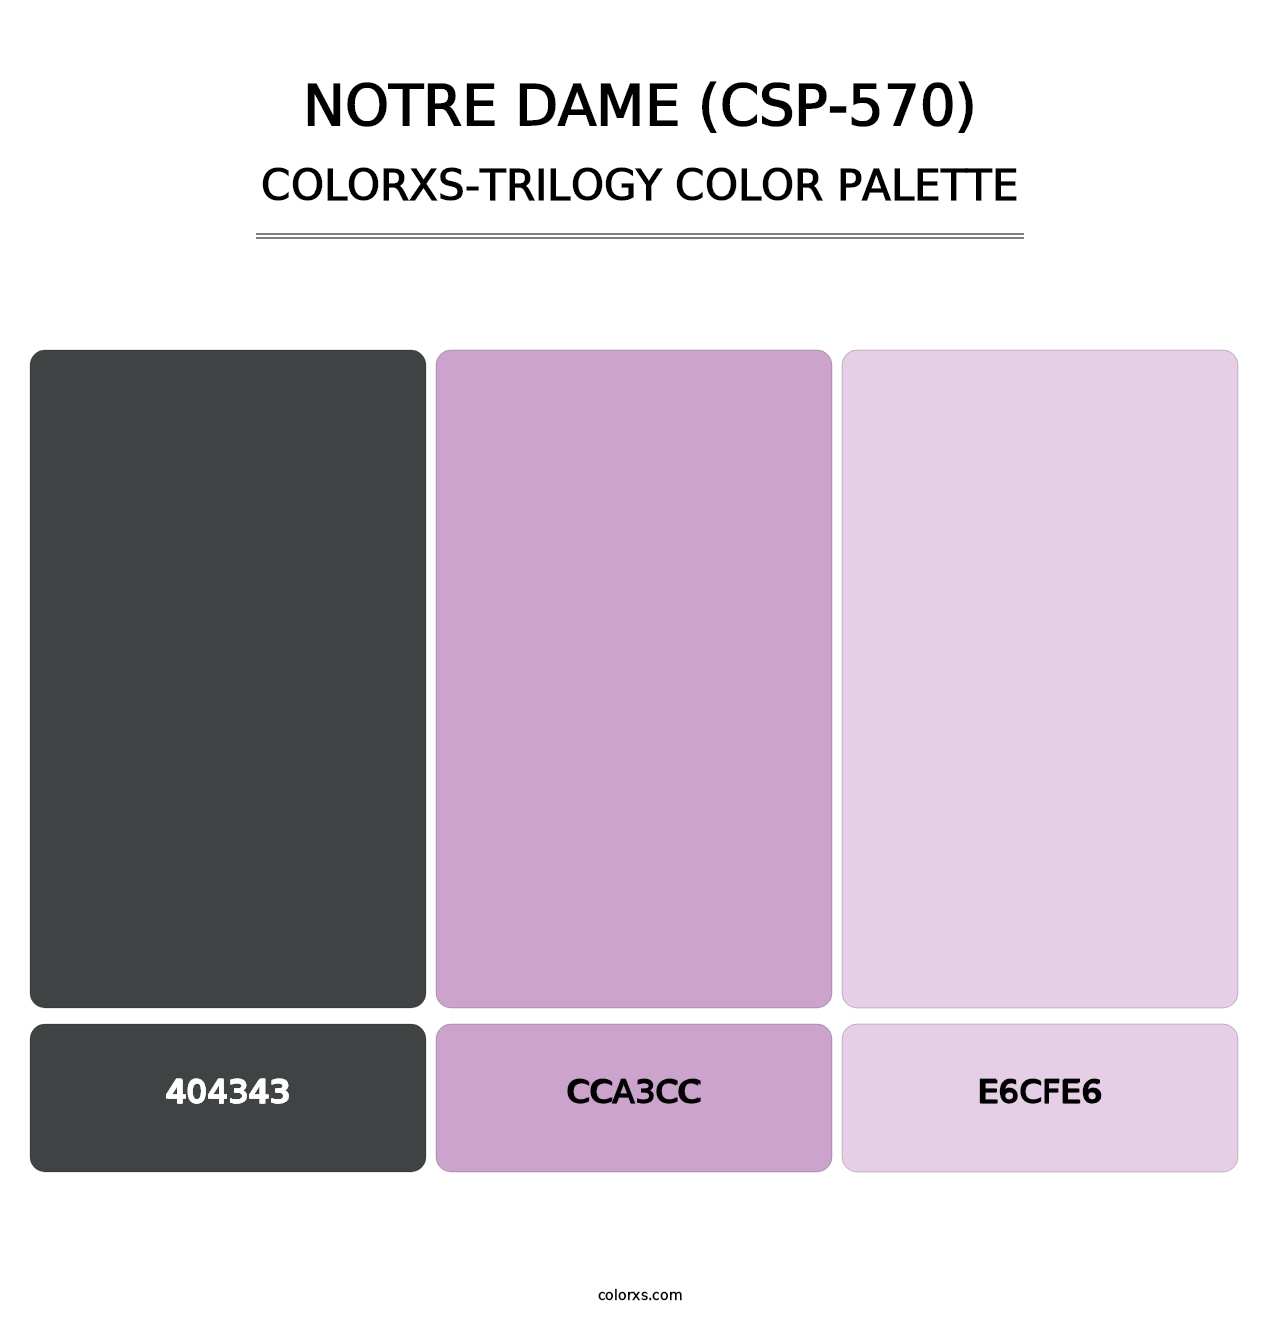 Notre Dame (CSP-570) - Colorxs Trilogy Palette